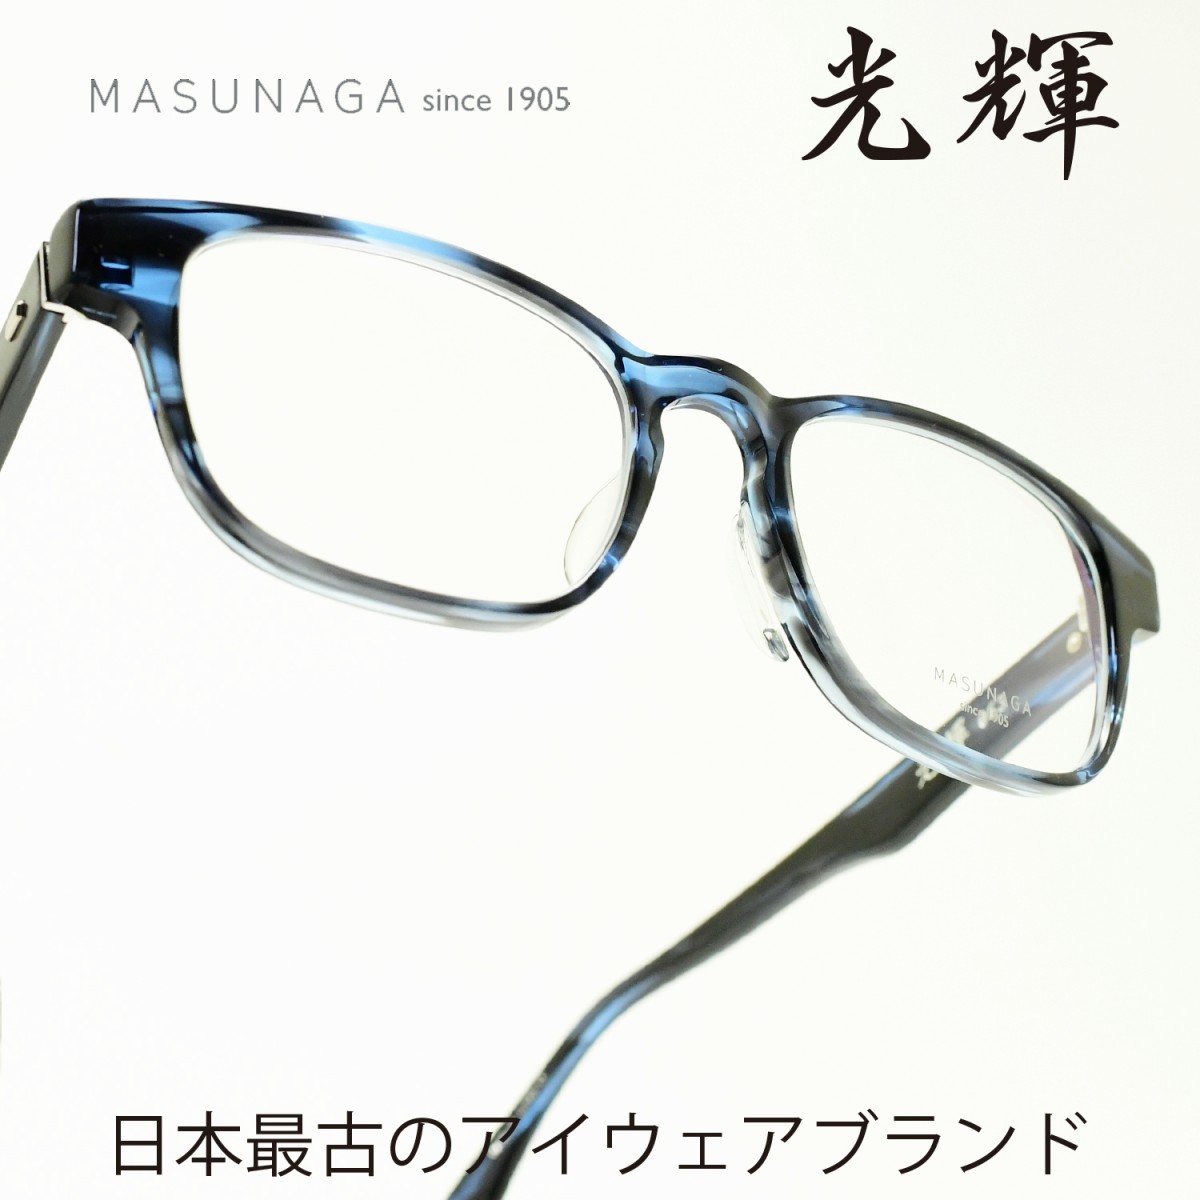 楽天市場 増永眼鏡 Masunaga光輝 063 Col 35 Blueメガネ 眼鏡 めがね メンズ レディース おしゃれブランド 人気 おすすめ フレーム 流行り 度付き レンズ デコリンメガネ